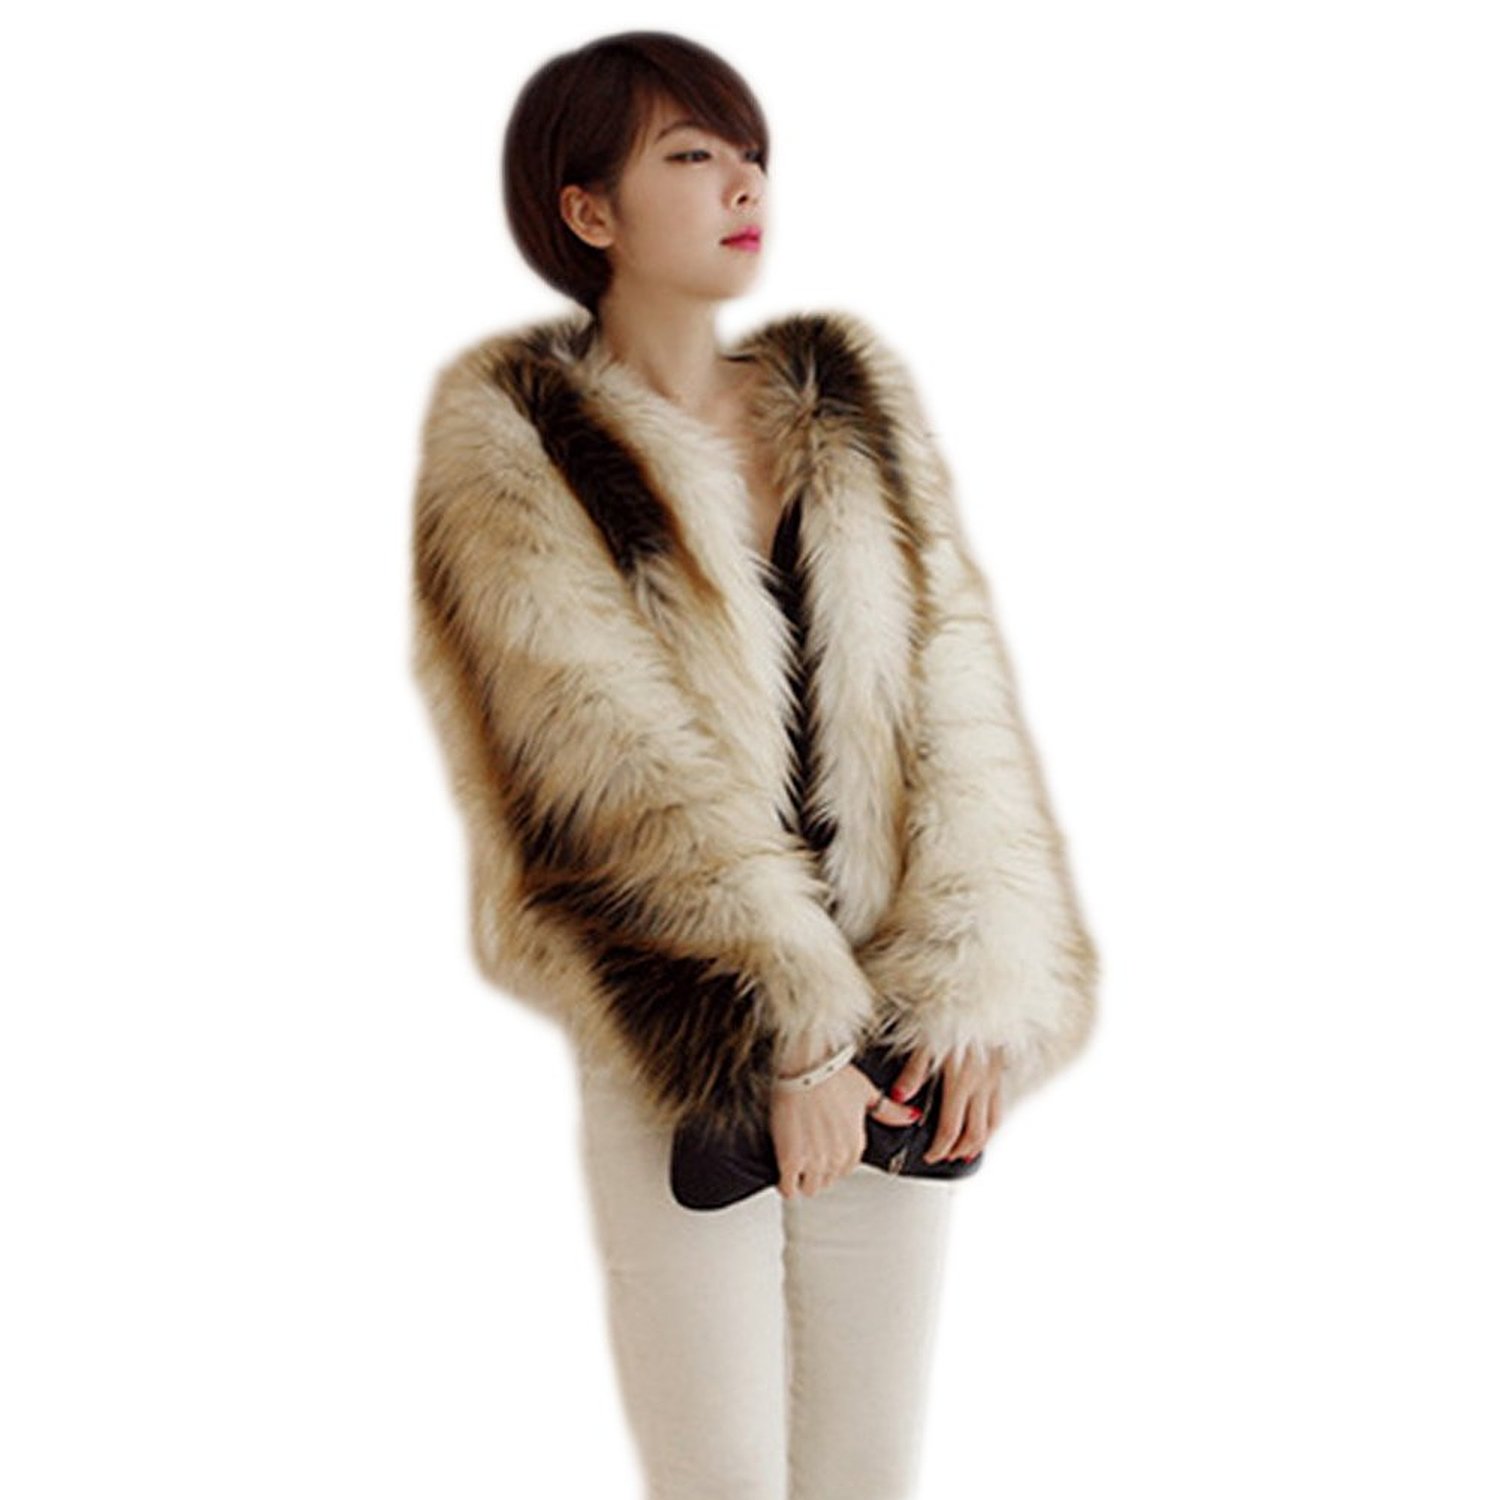 Etosell Women's Faux Fur Winter Warm Long Hair Overcoat Short Coat Gradient